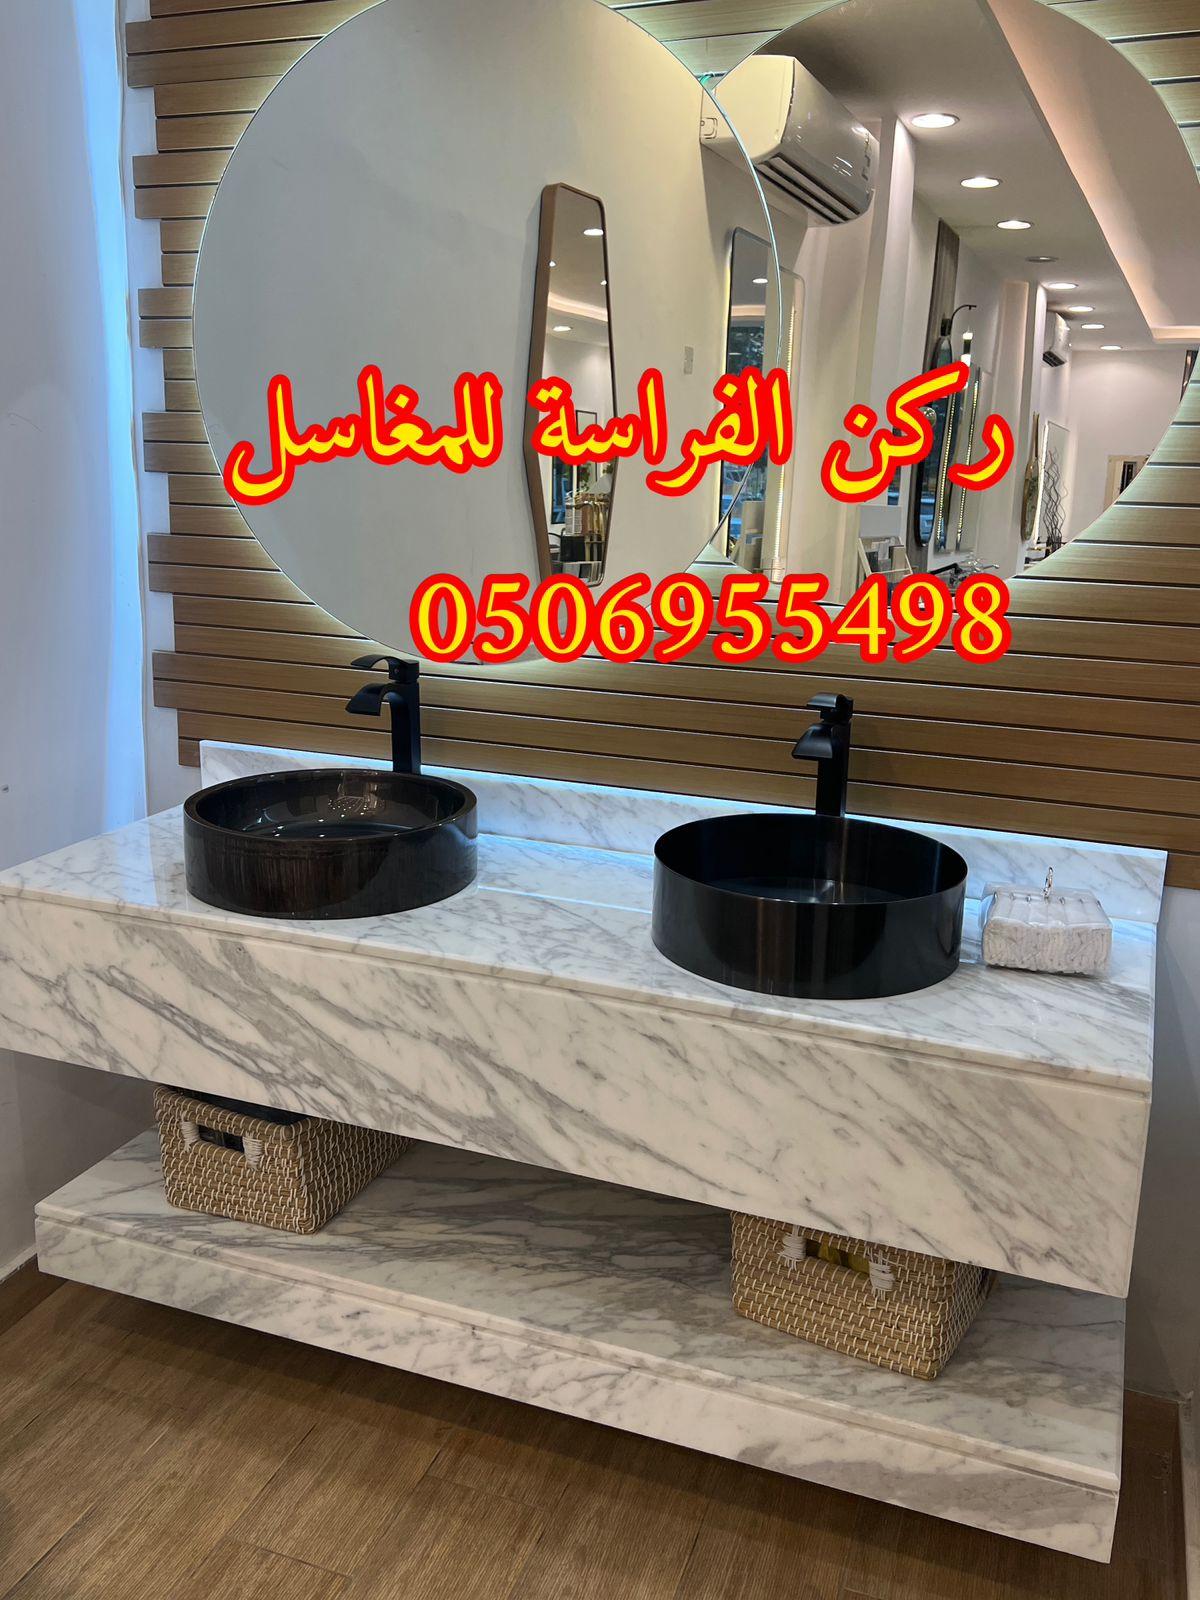 تركيب - تركيب مغاسل الرخام في الرياض,0506955498 467318236